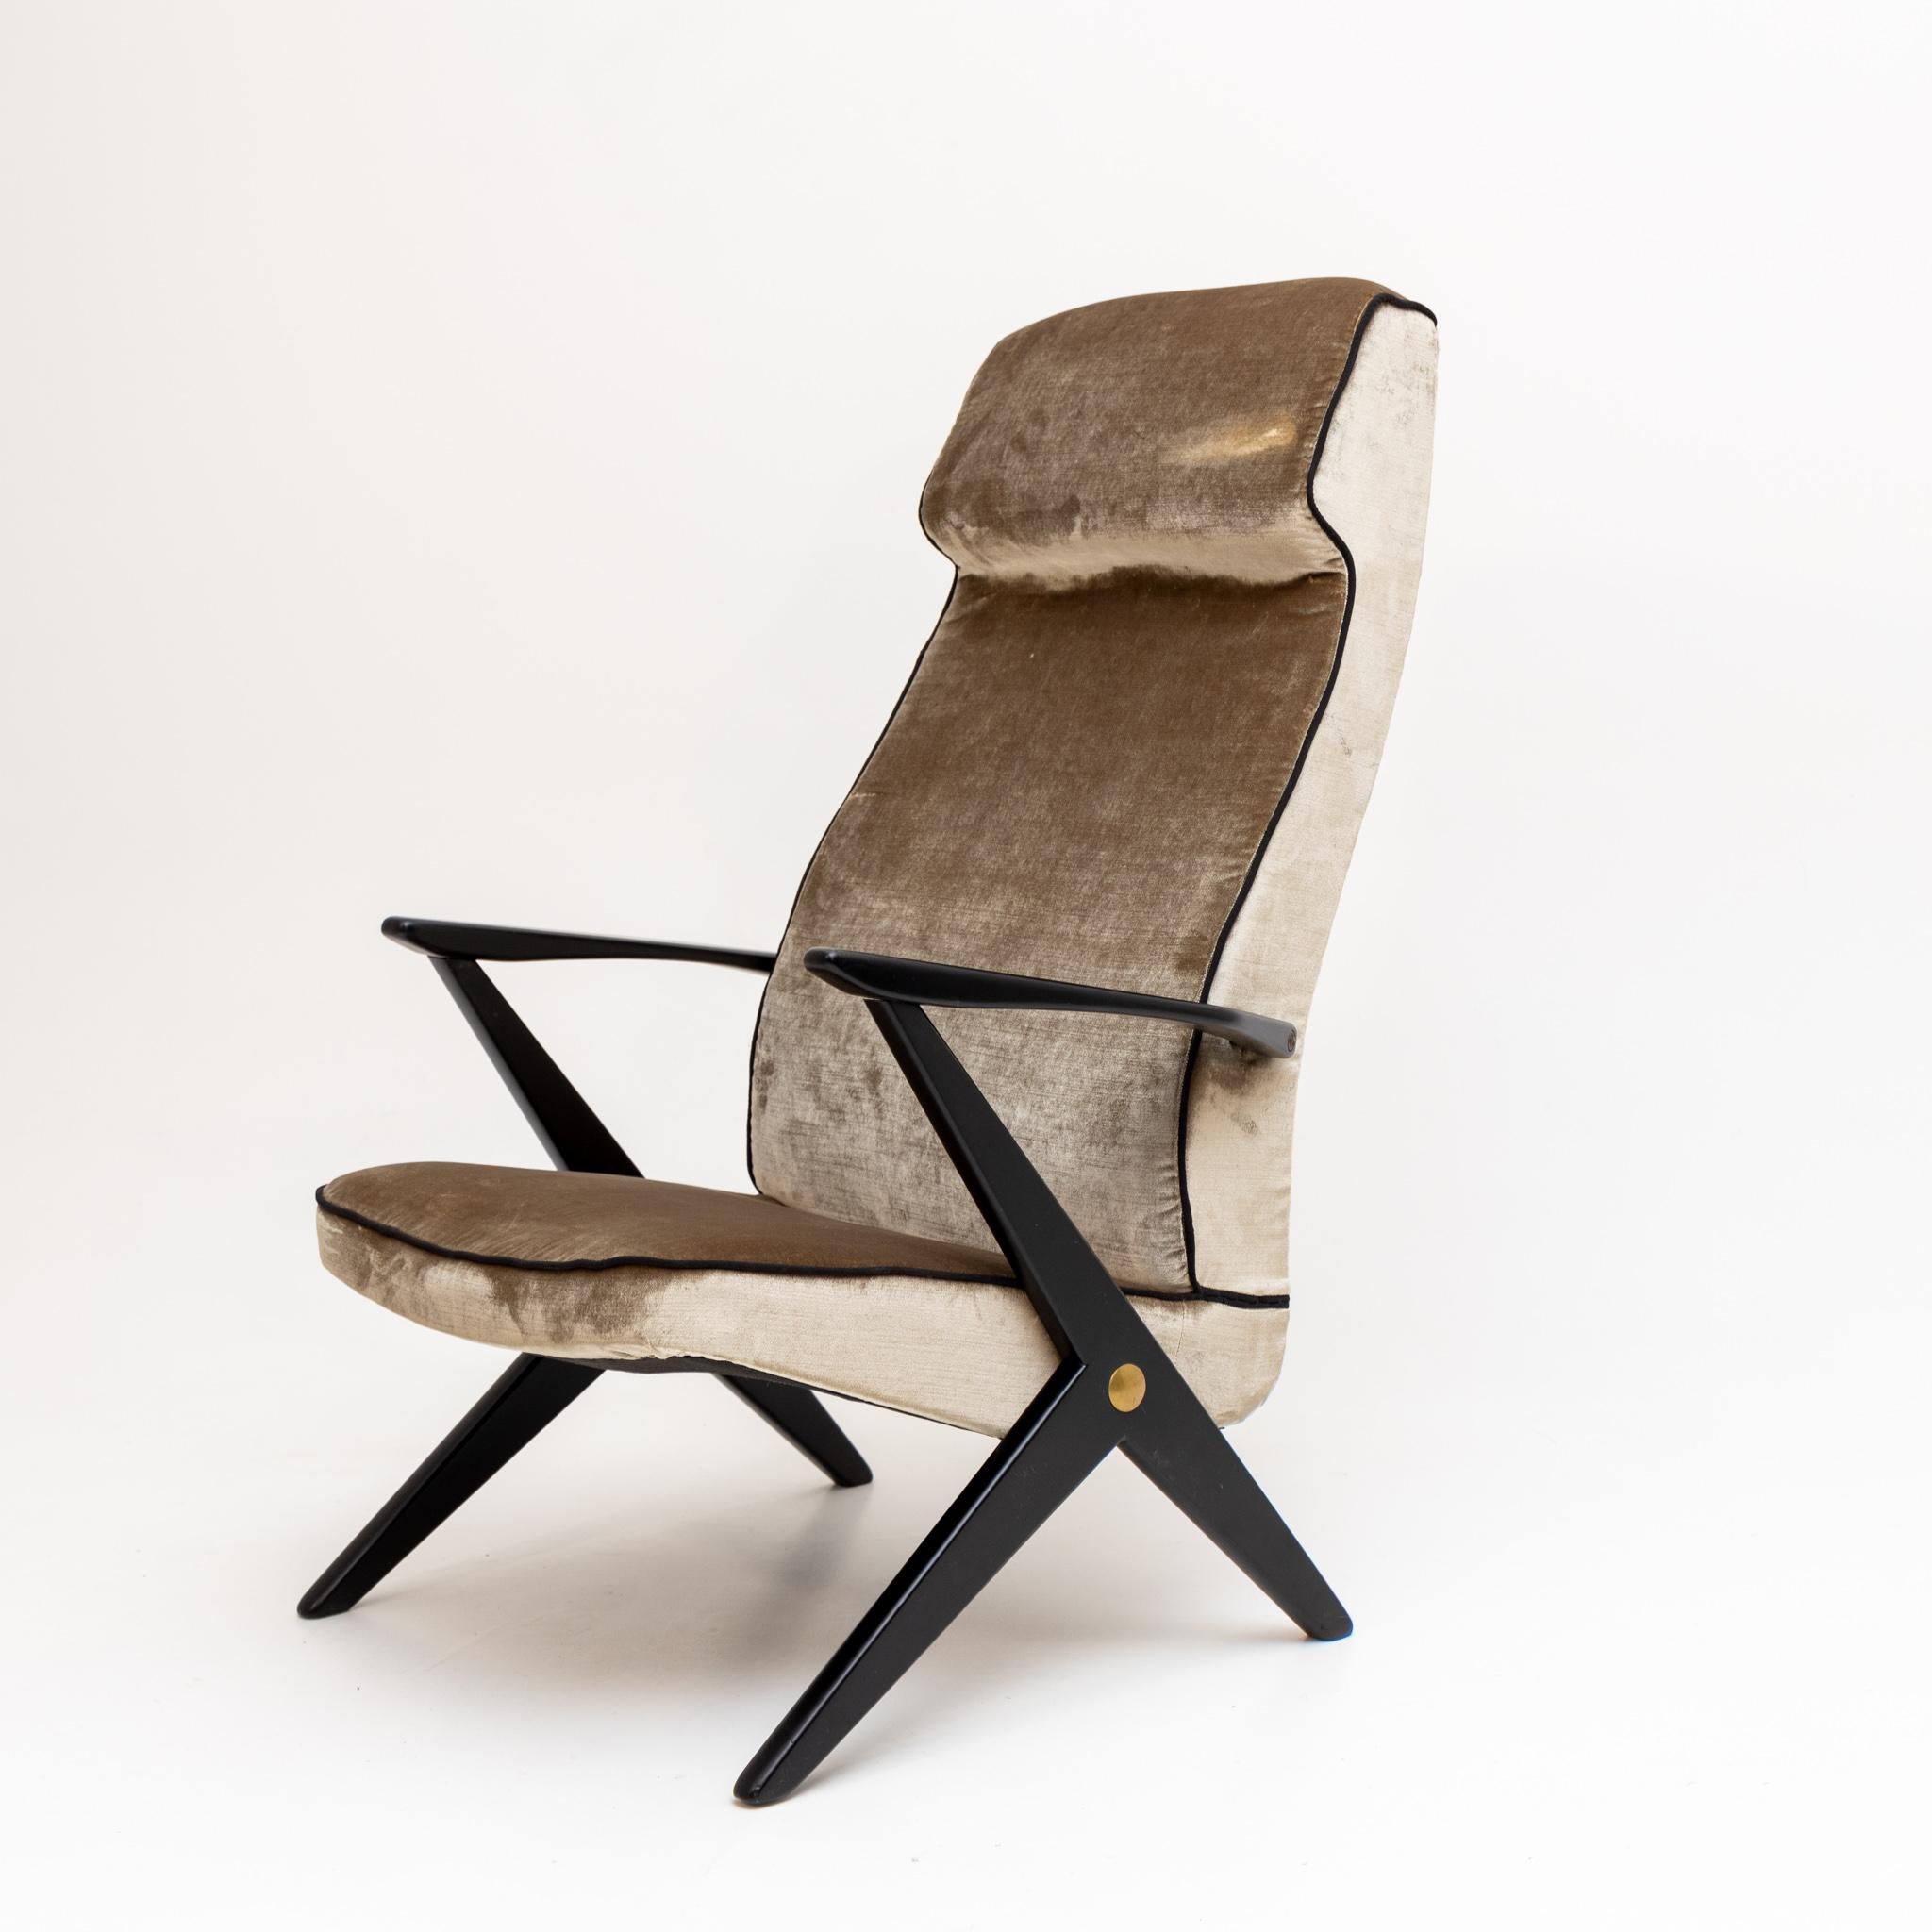 Sessel mit ebonisiertem Gestell und neu gepolstertem Sitz und Rückenlehne aus grauem Samt.